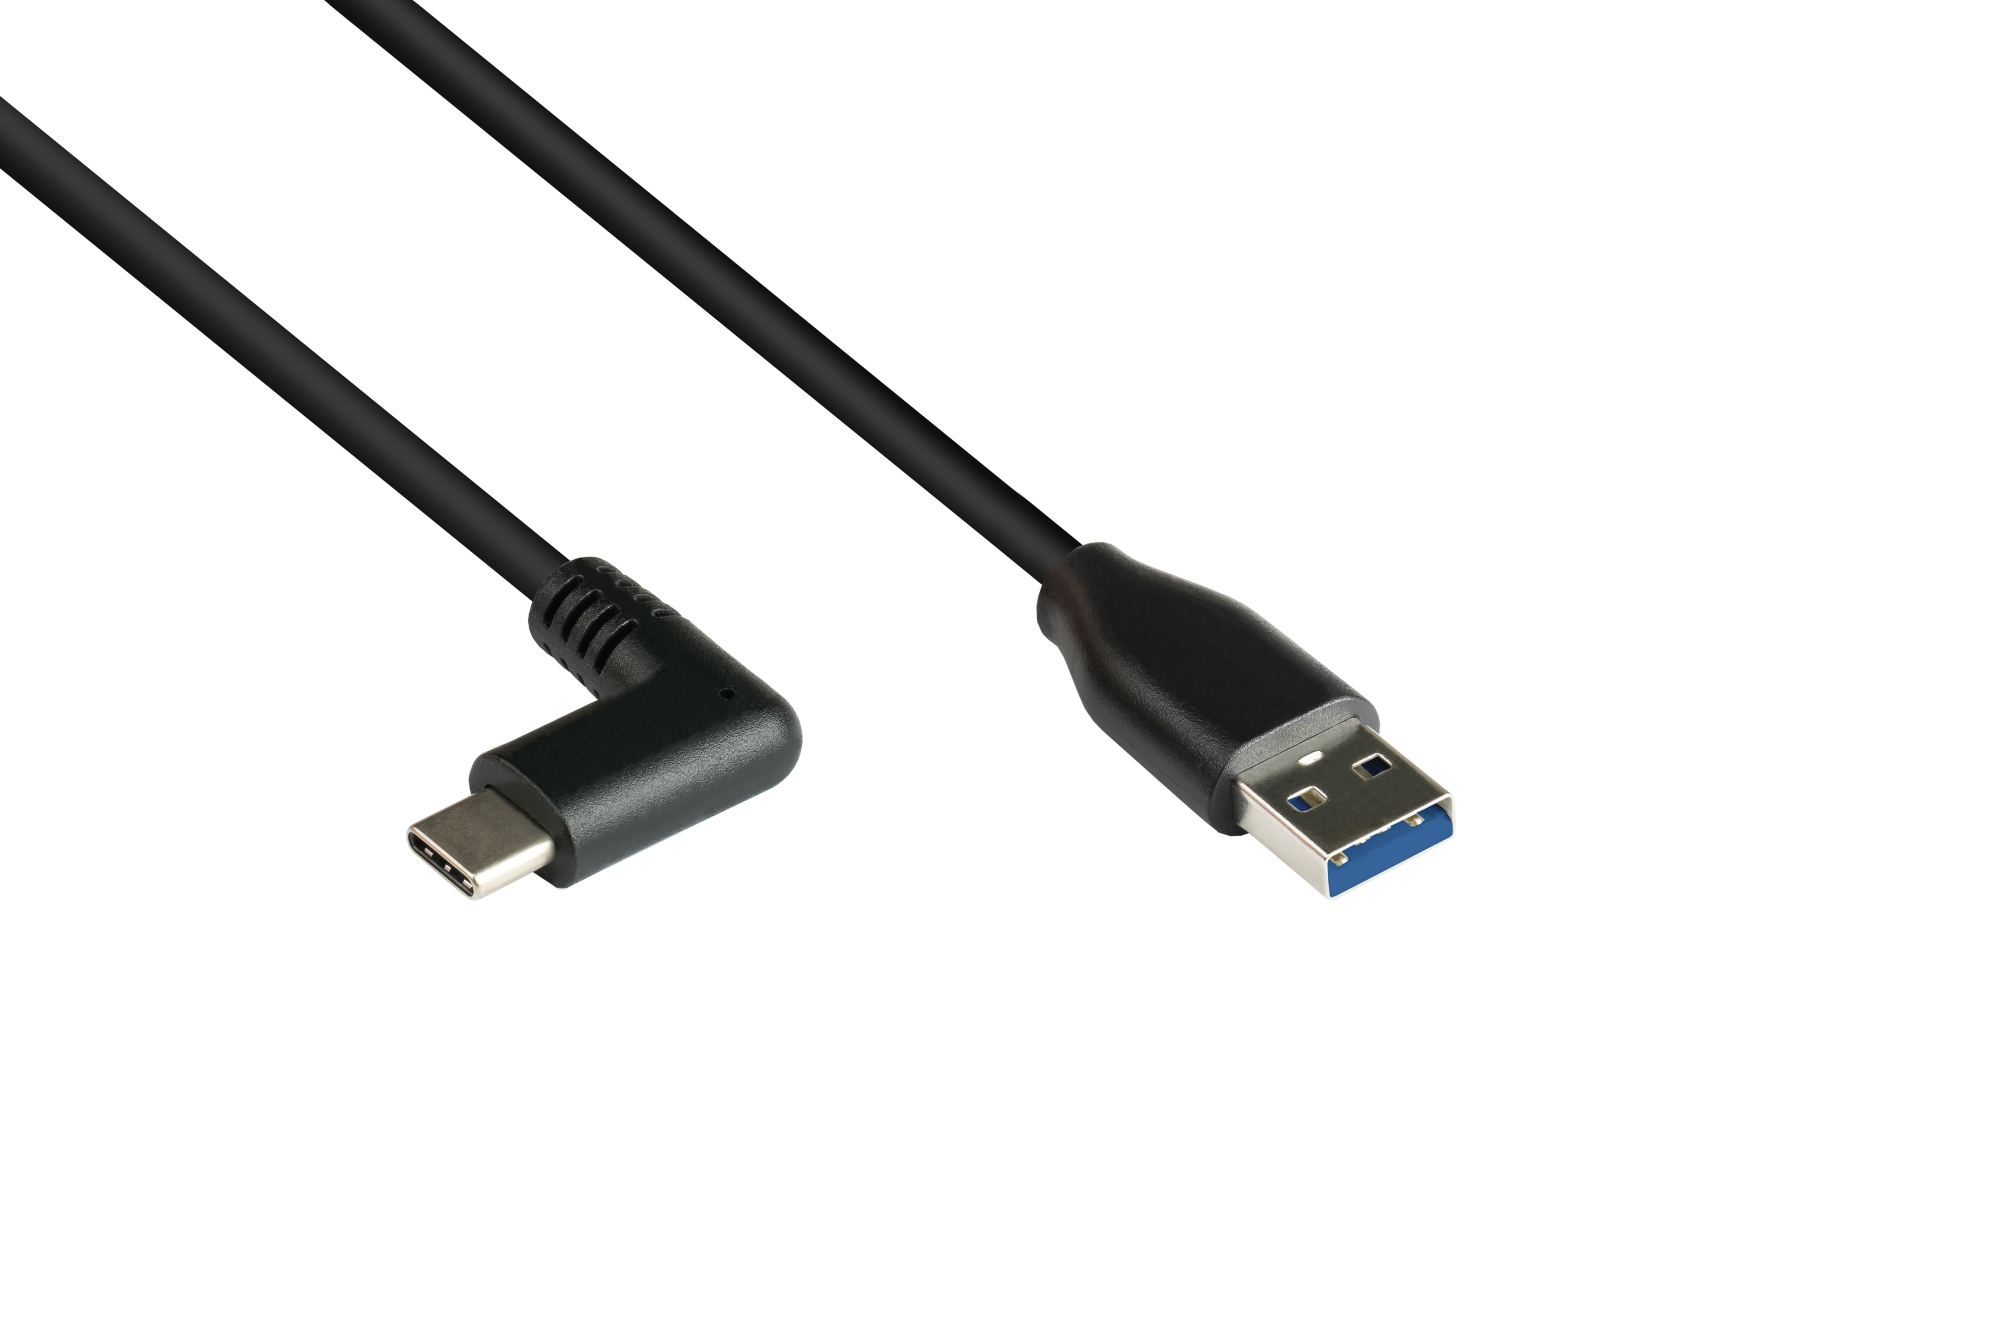 Anschlusskabel USB 3.0, USB-C™ Stecker 90° gewinkelt an USB 3.0 A Stecker, CU, schwarz, 0,5m